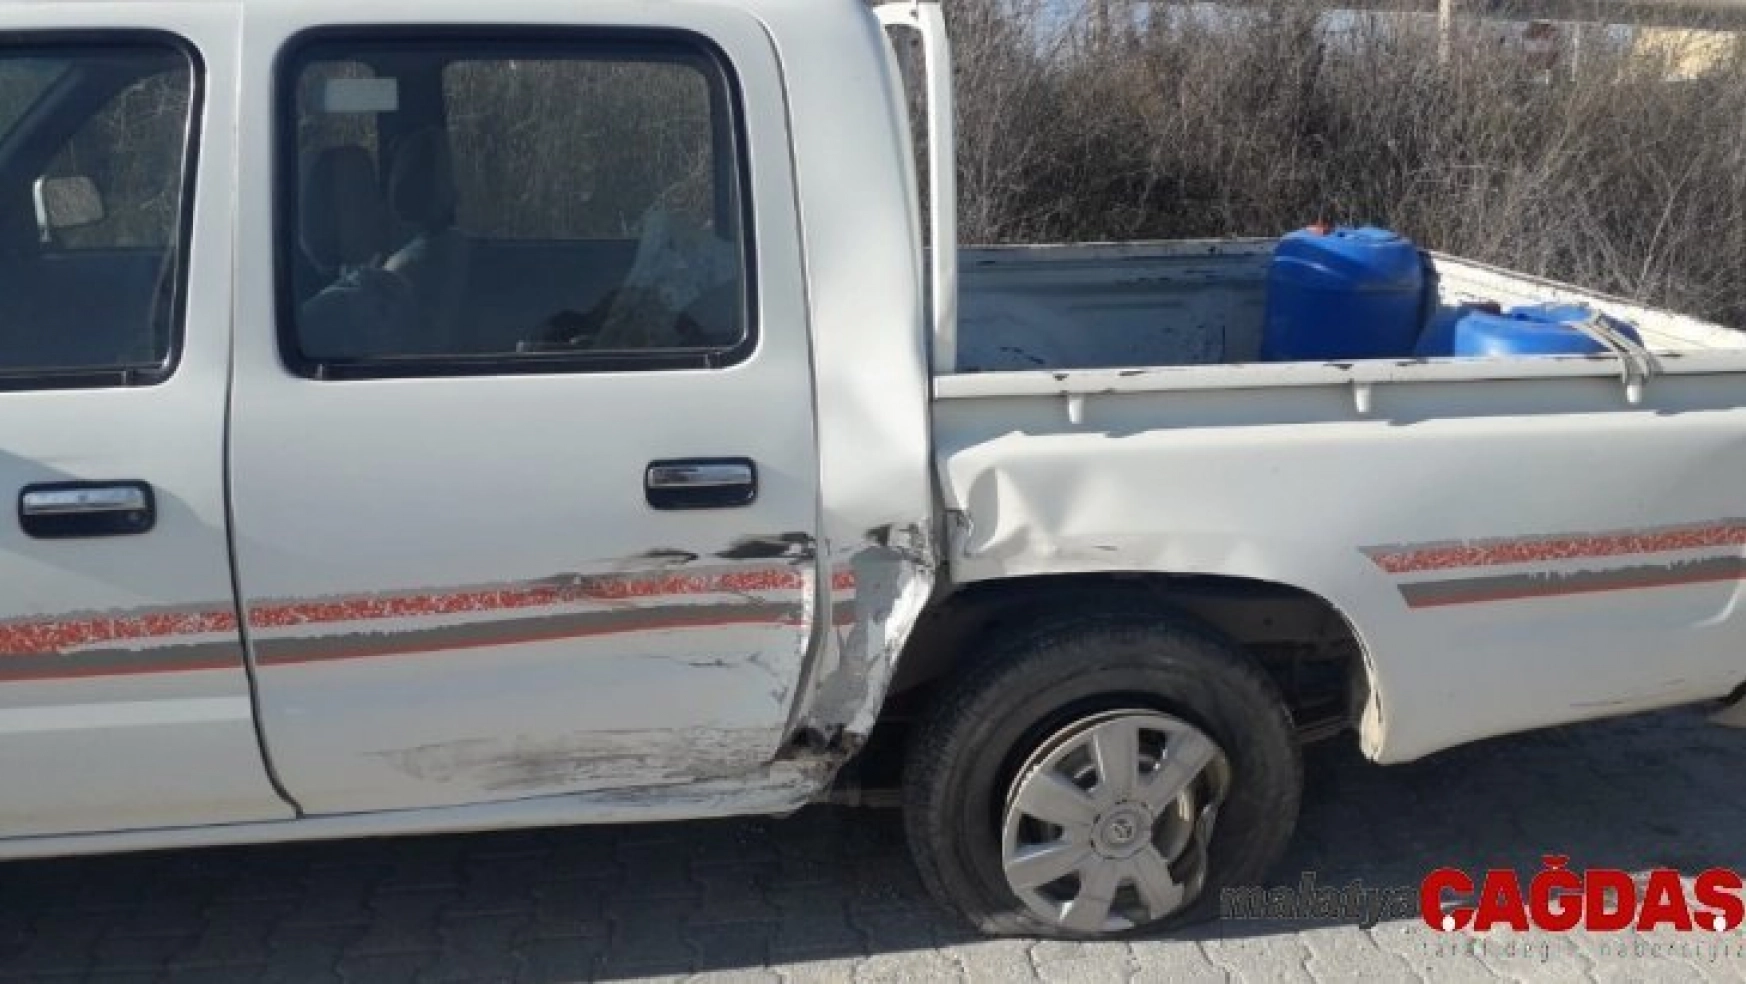 Bilecik'te yaşanan trafik kazasında 1 kişi yaralandı